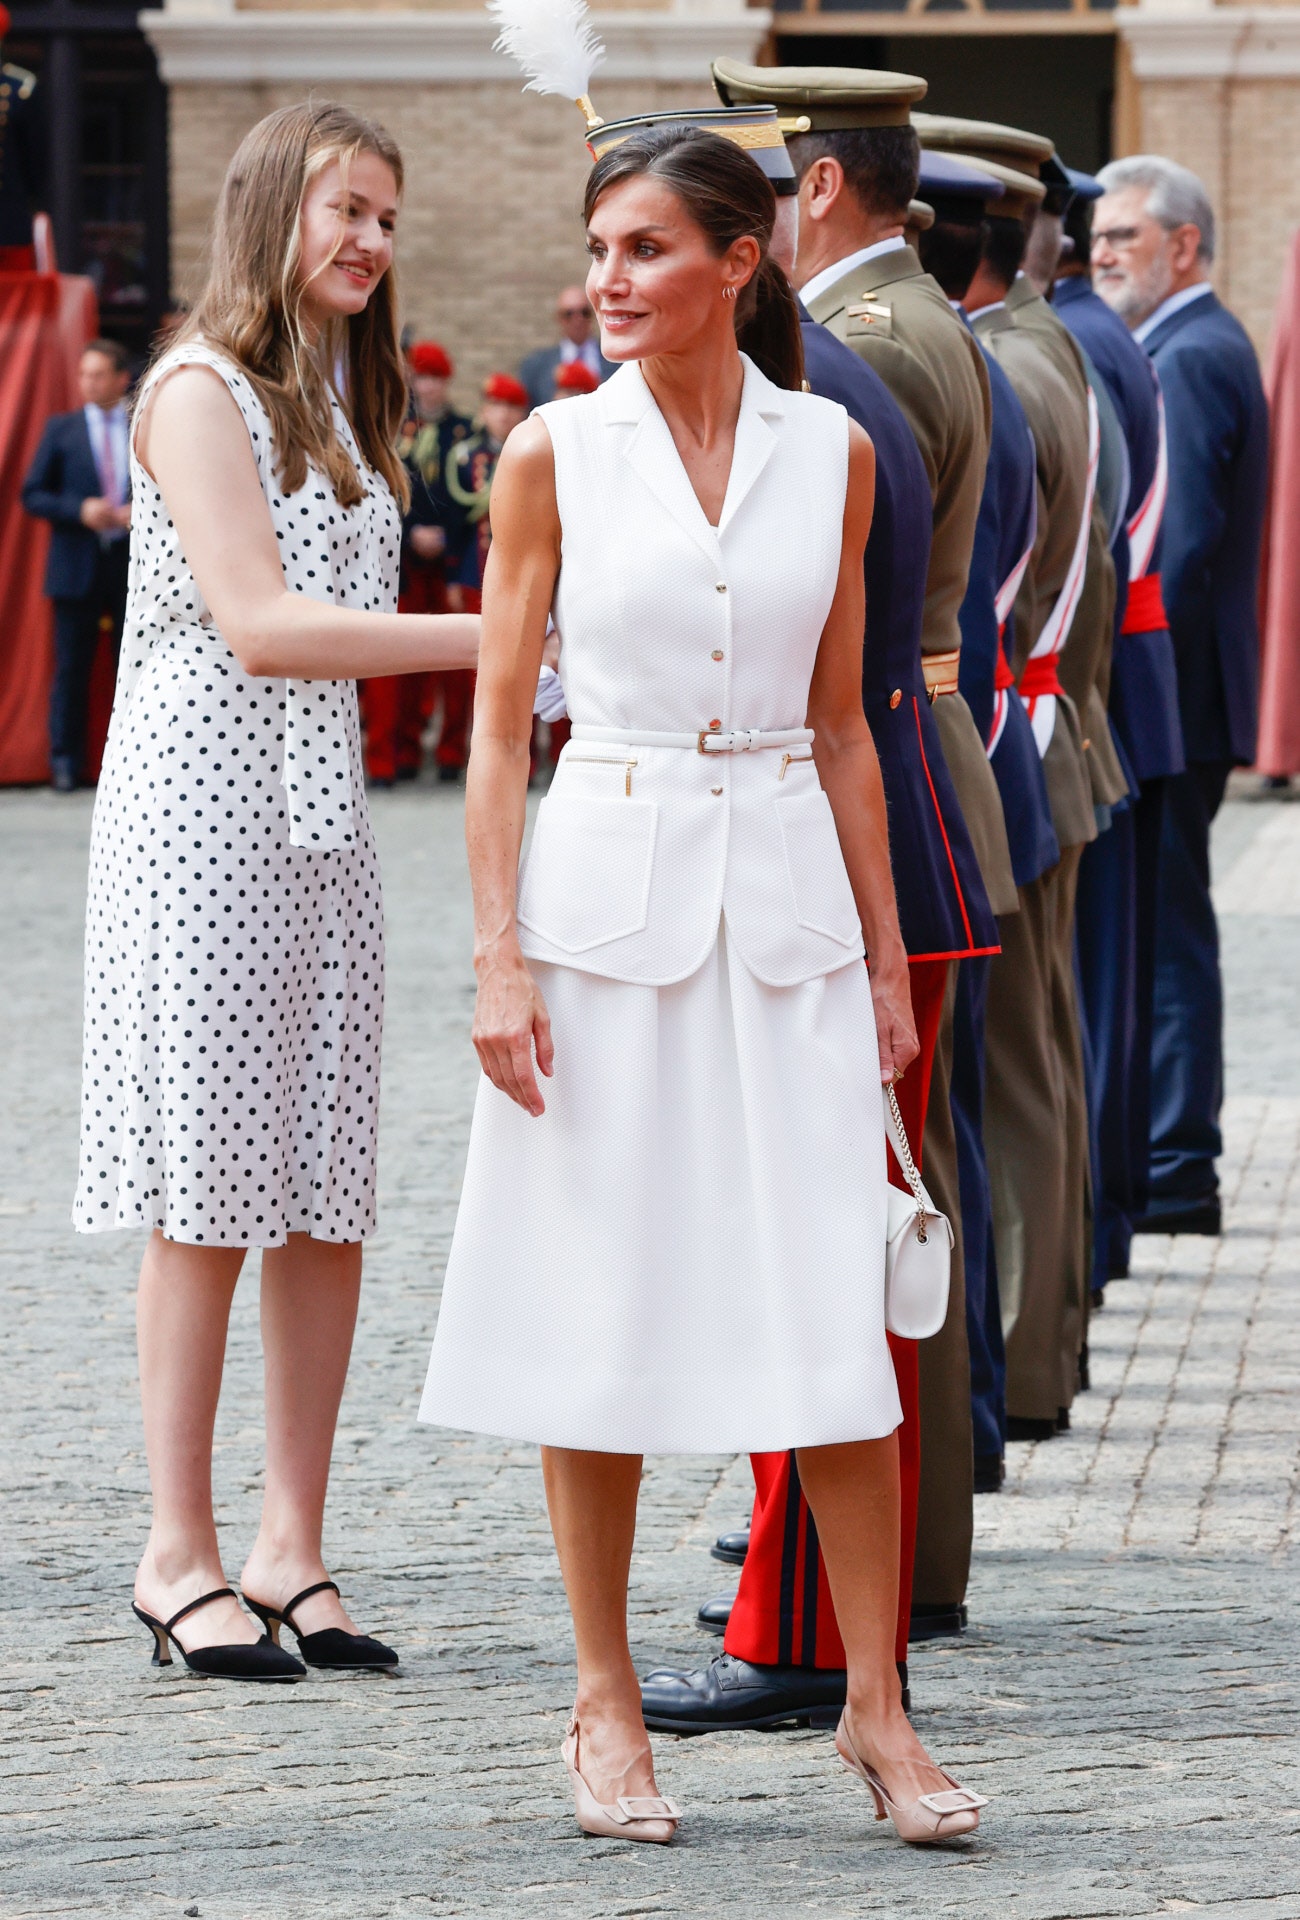 letizia también se apunta a los zapatos de punta y tacón chupete favoritos de las mujeres elegantes